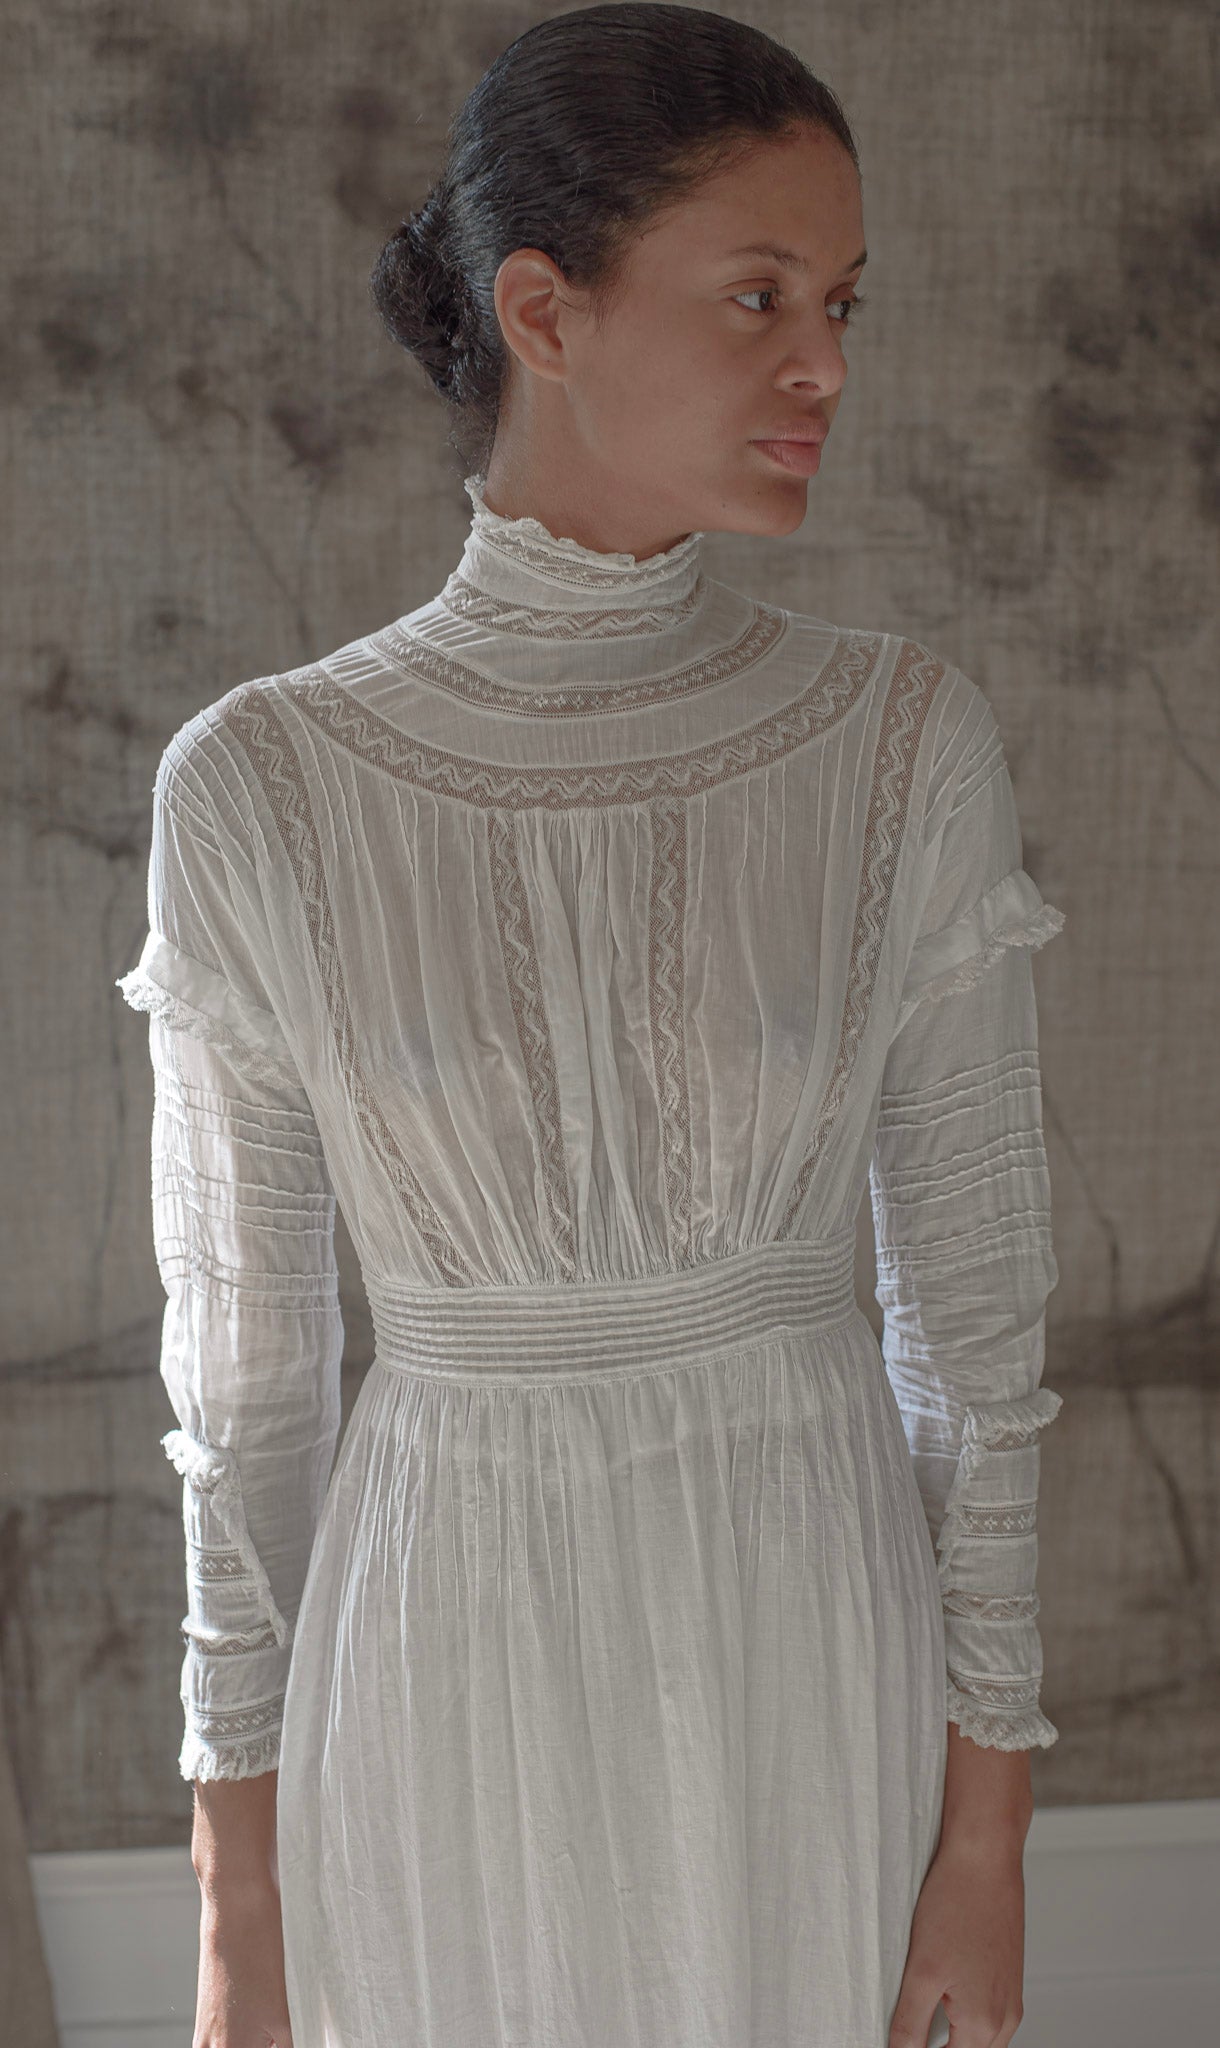 Edwardian cotton lace lawn dress